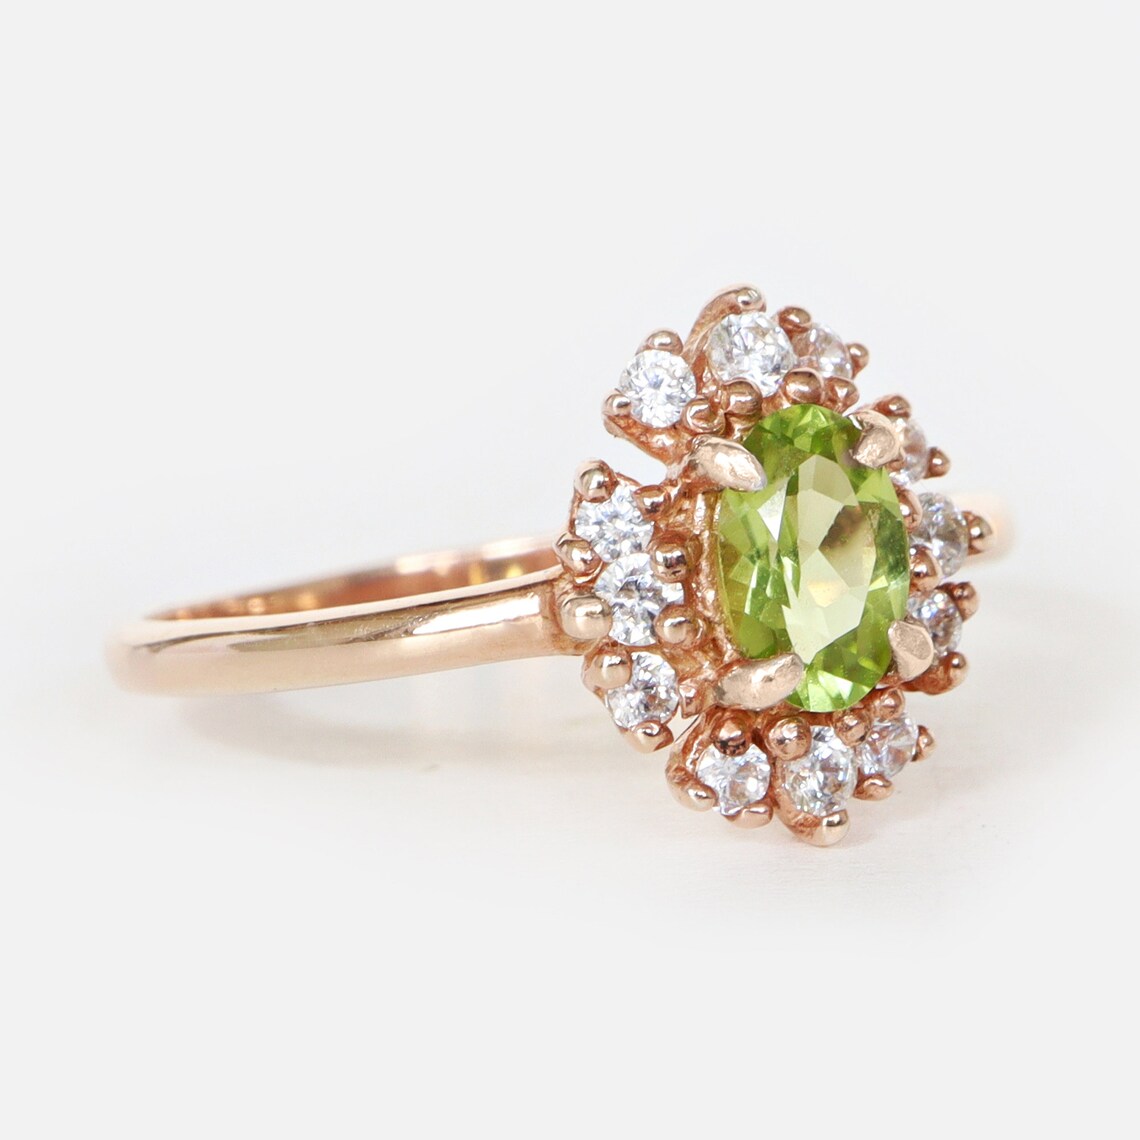 Vintage Peridot Ring- 14k Rose Gold Vermeil Ring - Peridot Engagement Ring